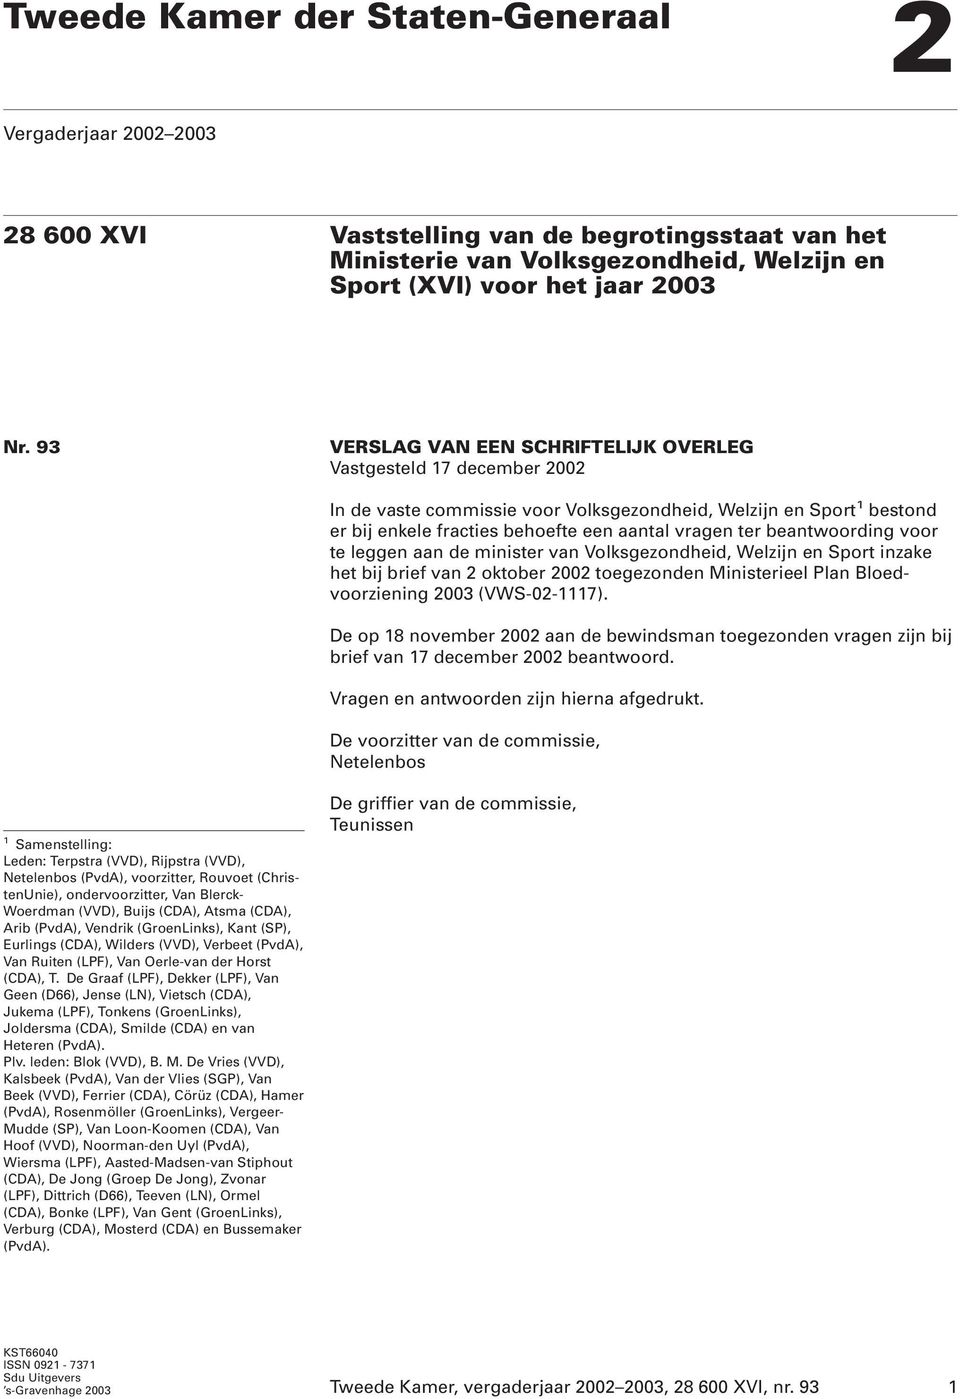 beantwoording voor te leggen aan de minister van Volksgezondheid, Welzijn en Sport inzake het bij brief van 2 oktober 2002 toegezonden Ministerieel Plan Bloedvoorziening 2003 (VWS-02-1117).